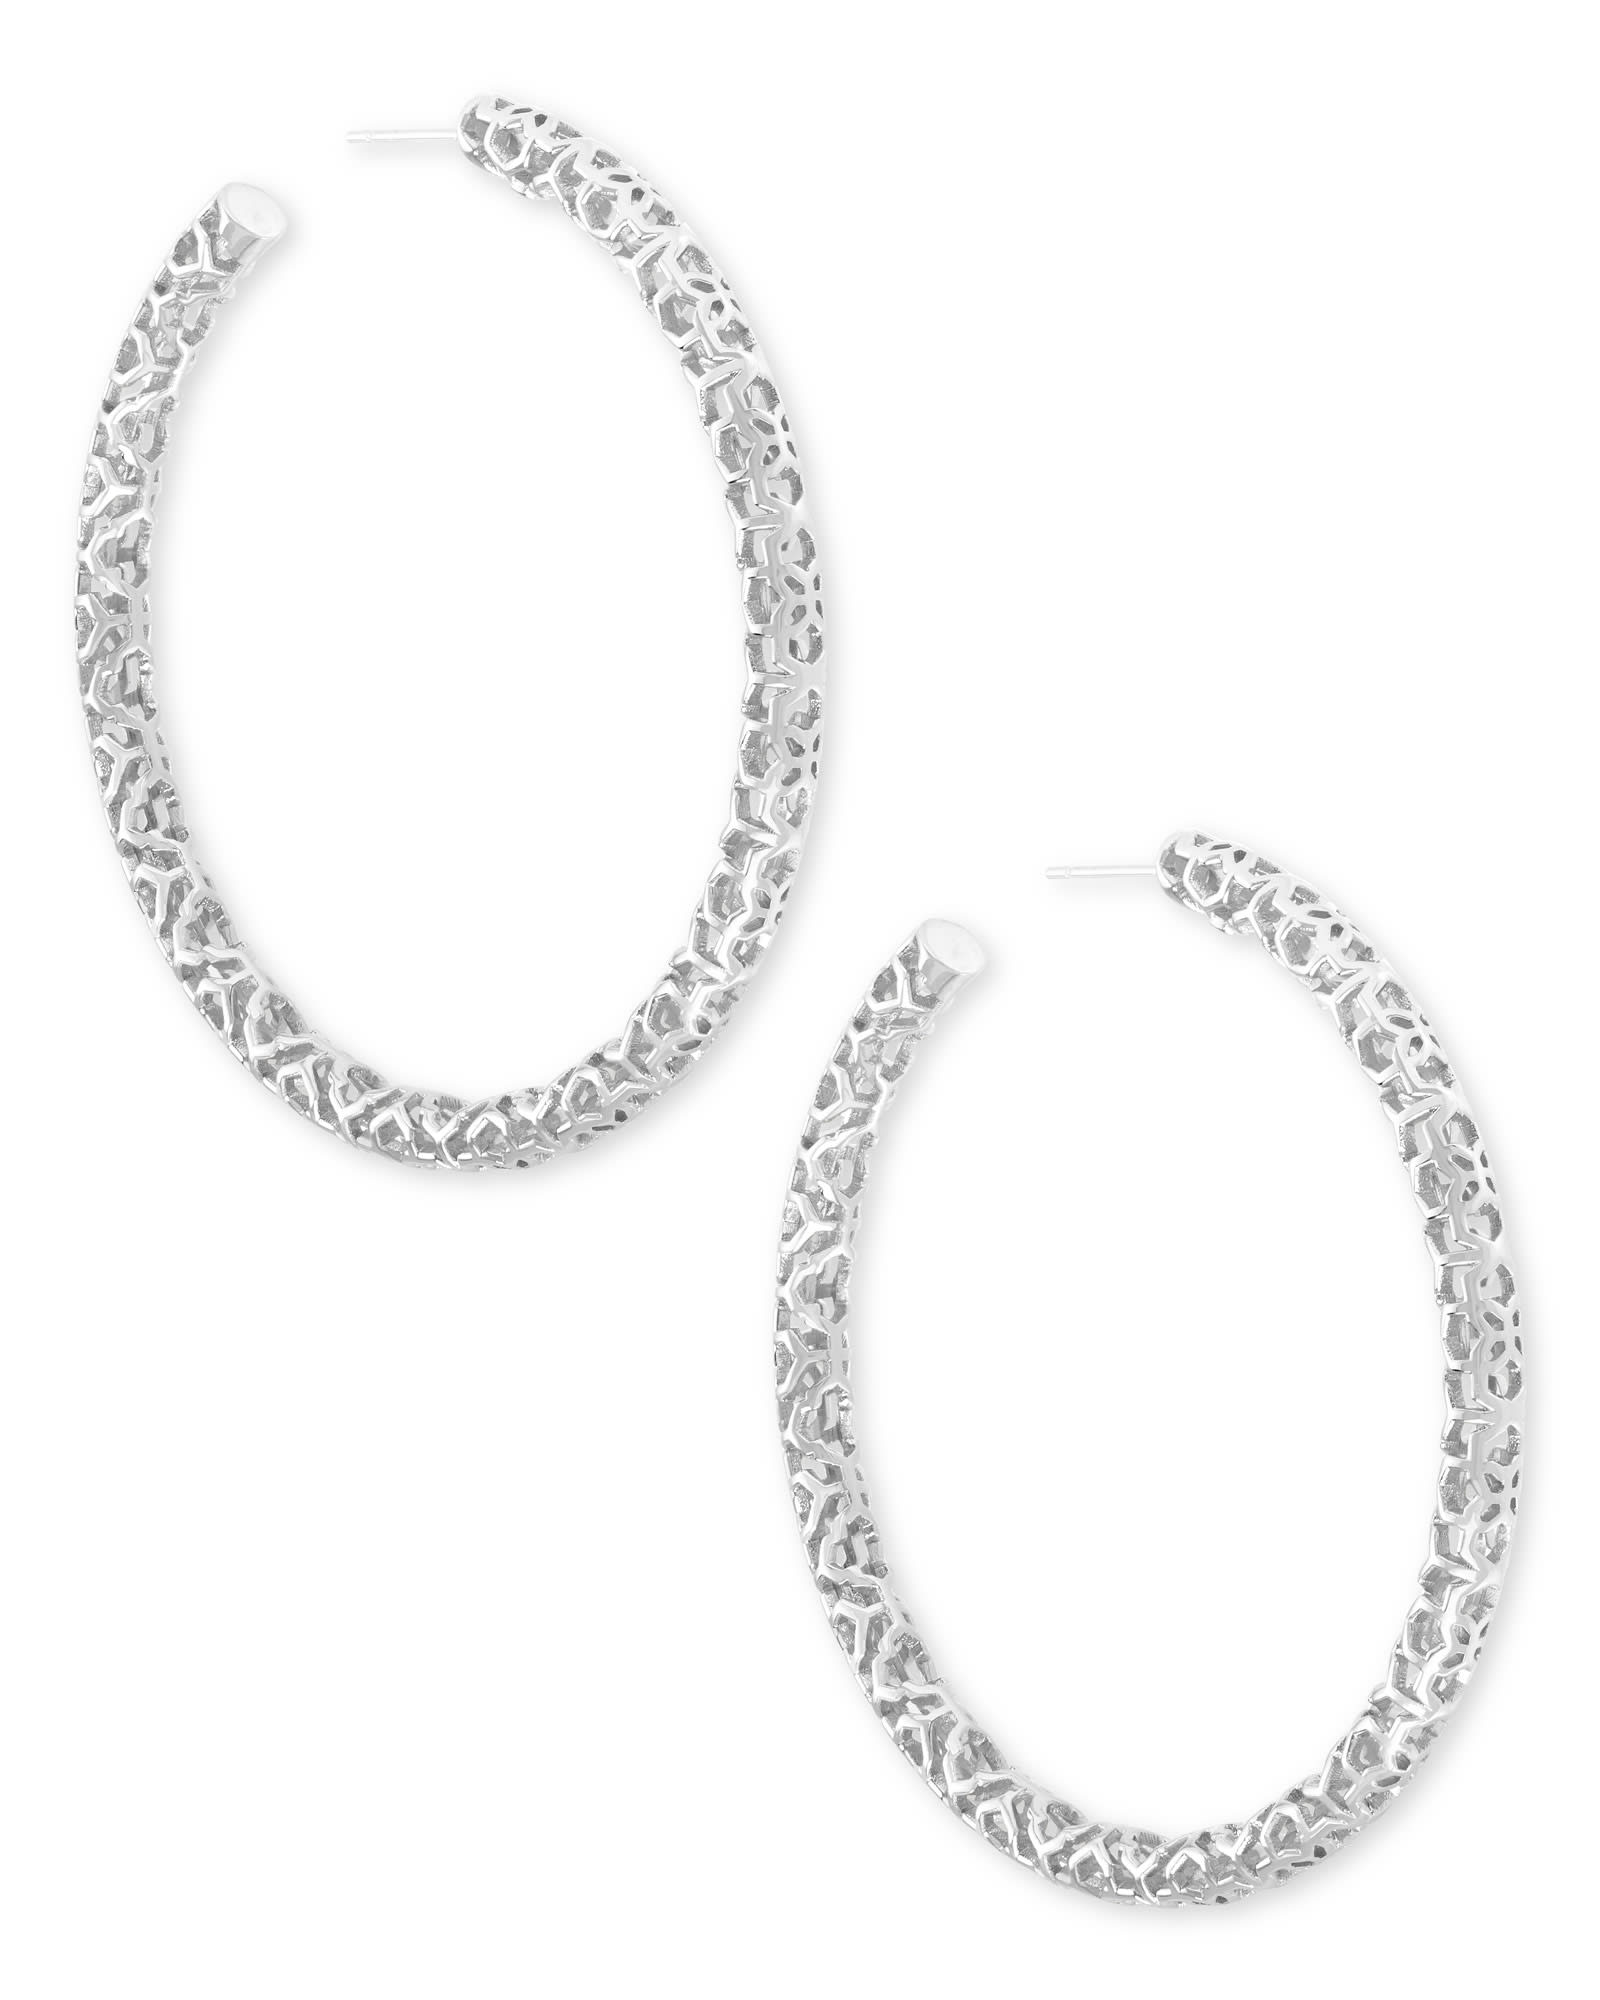 Veronica Hoop Earrings in Silver